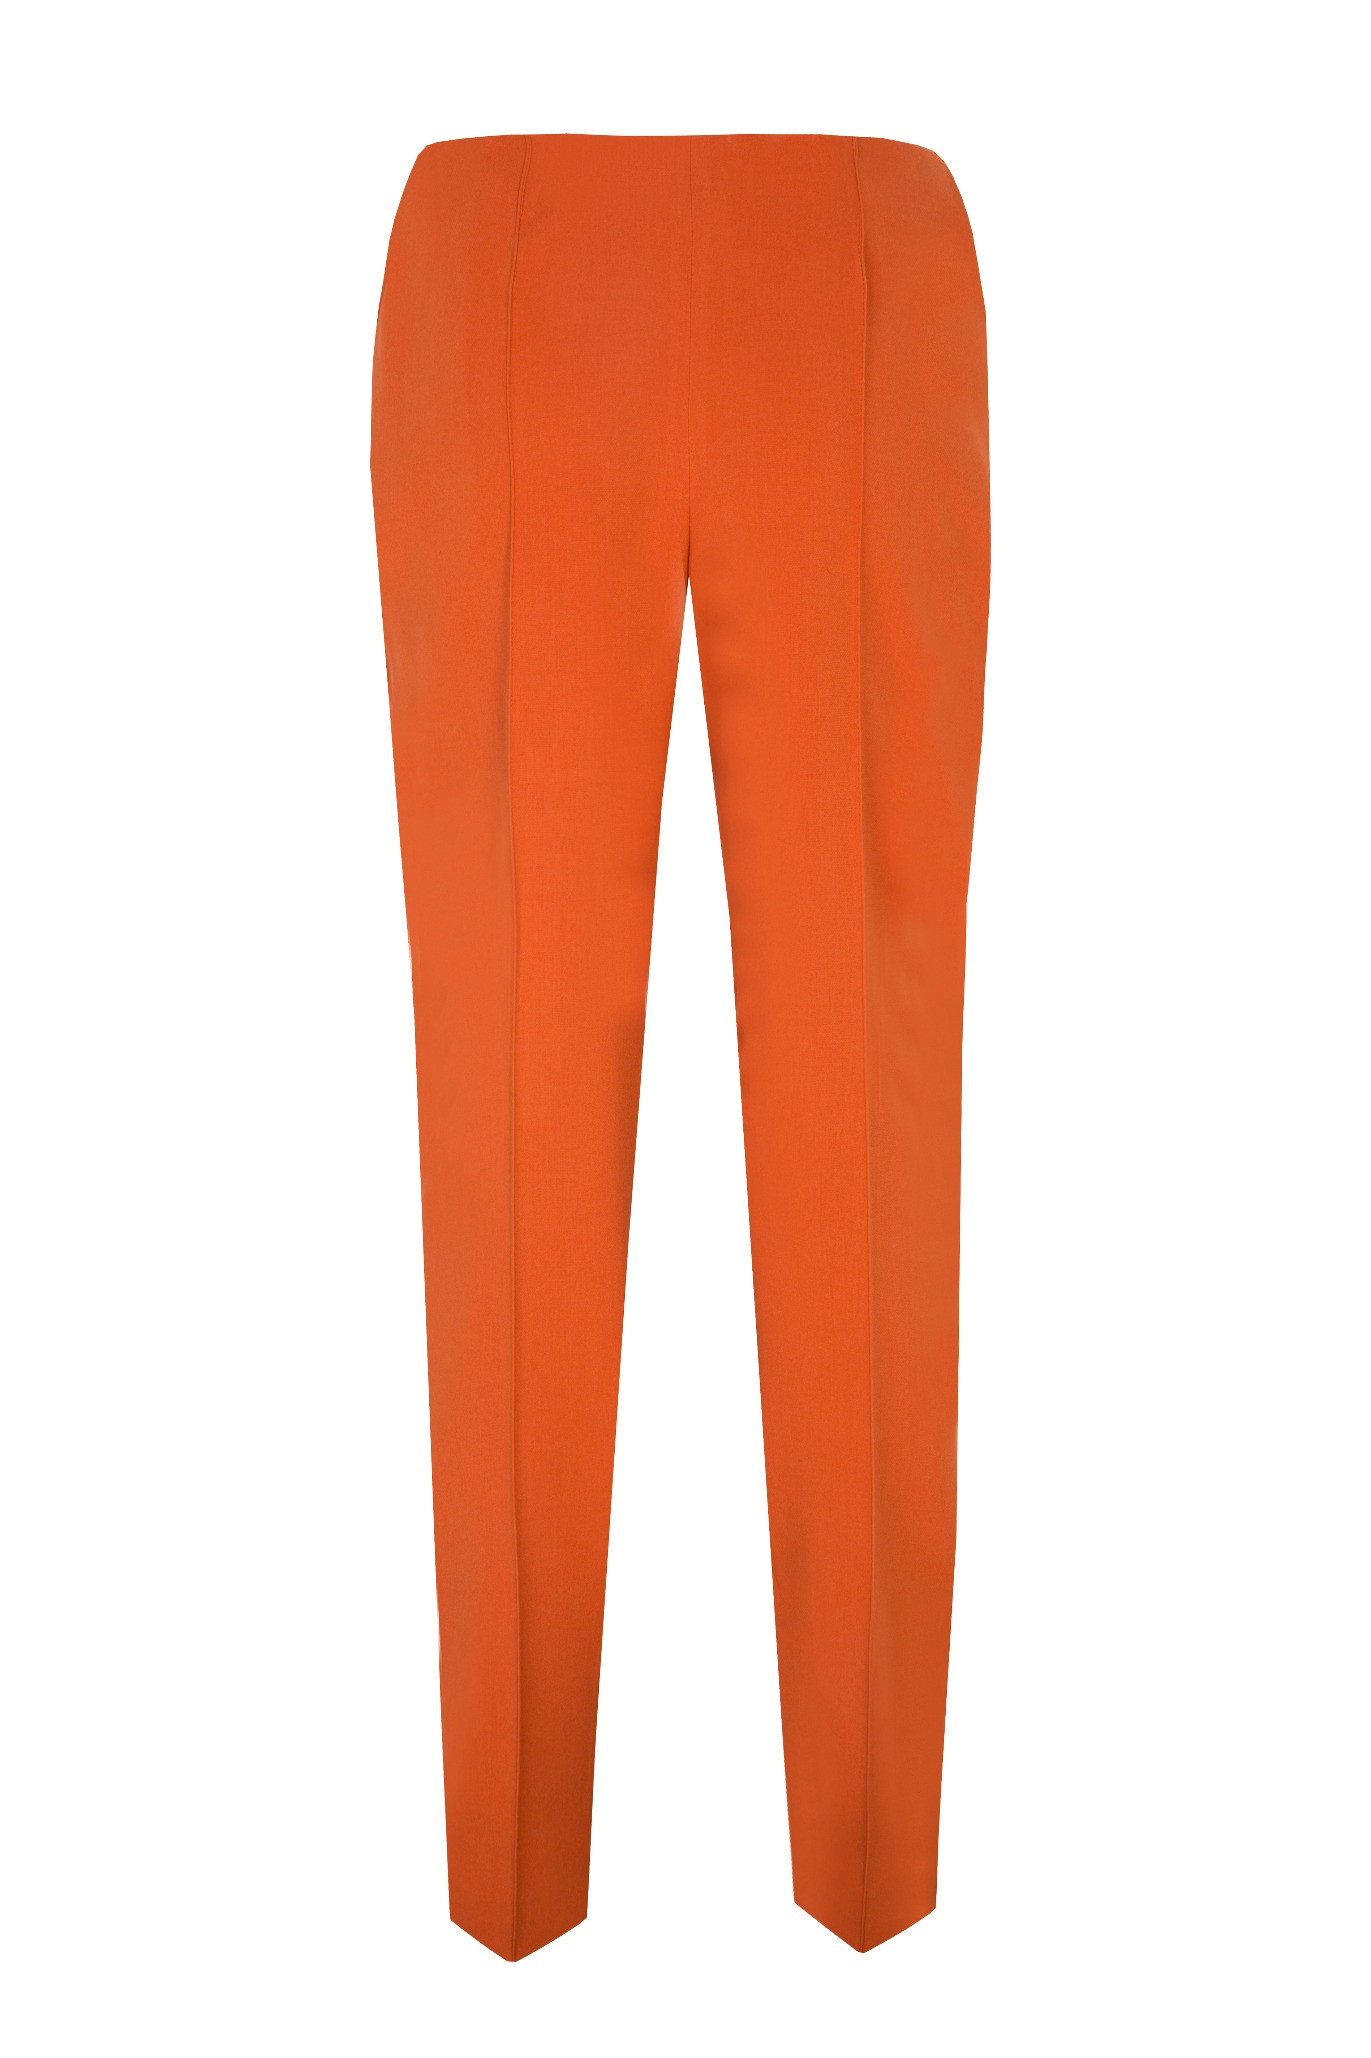 Spodnie z kantem pomarańcz